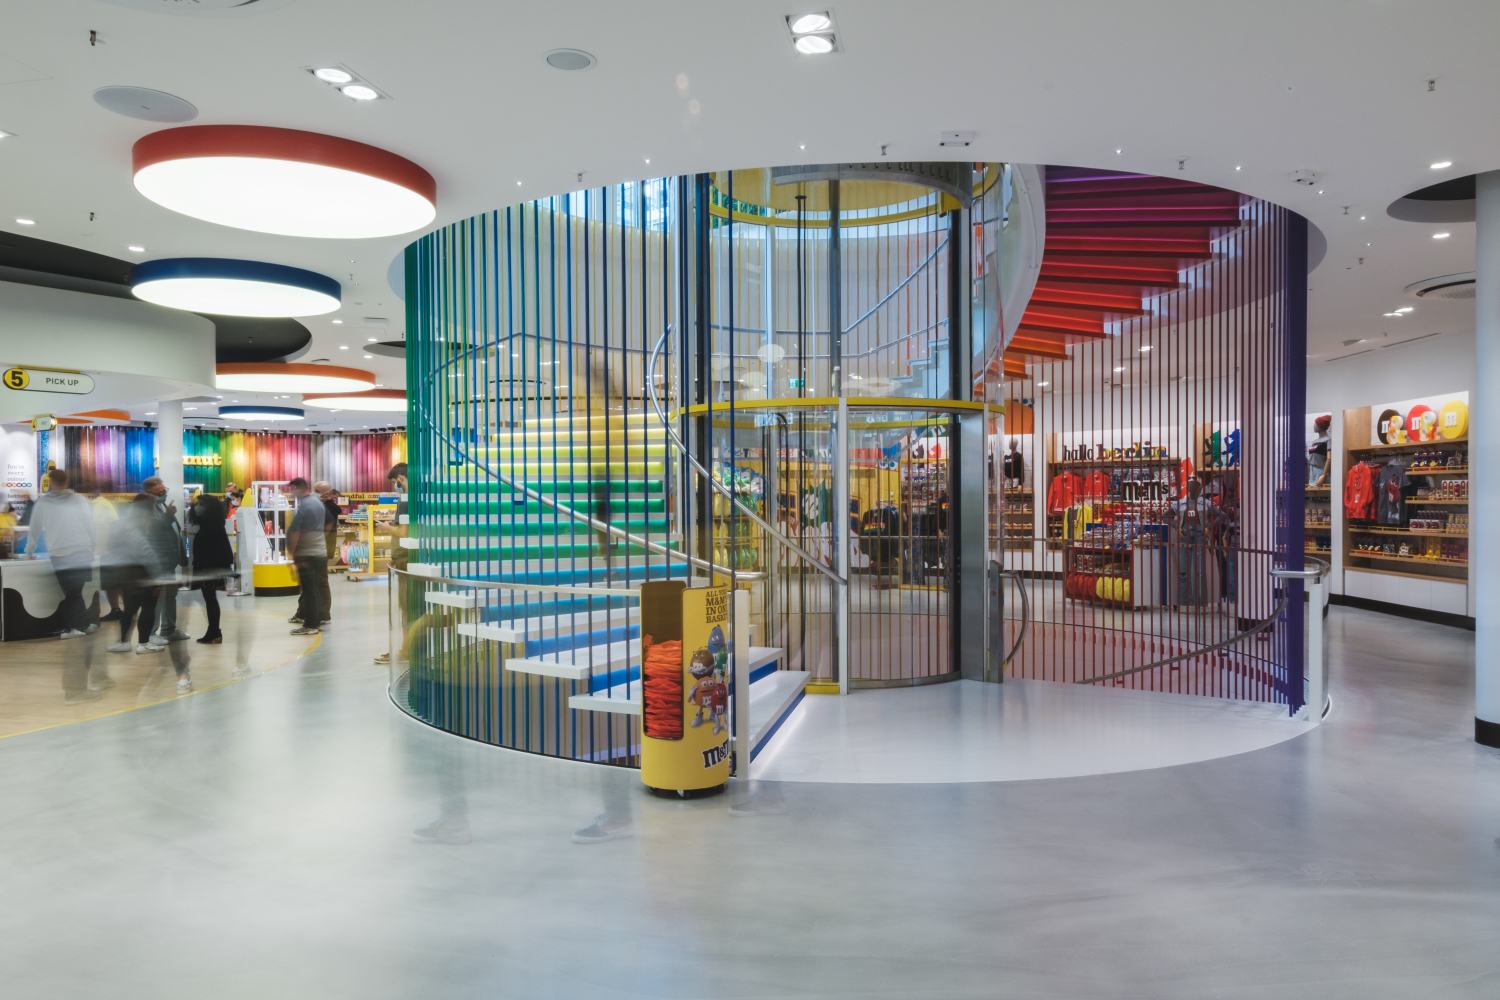 M&M'S Store Berlin - AUKETT + HEESE Architects : AUKETT + HEESE